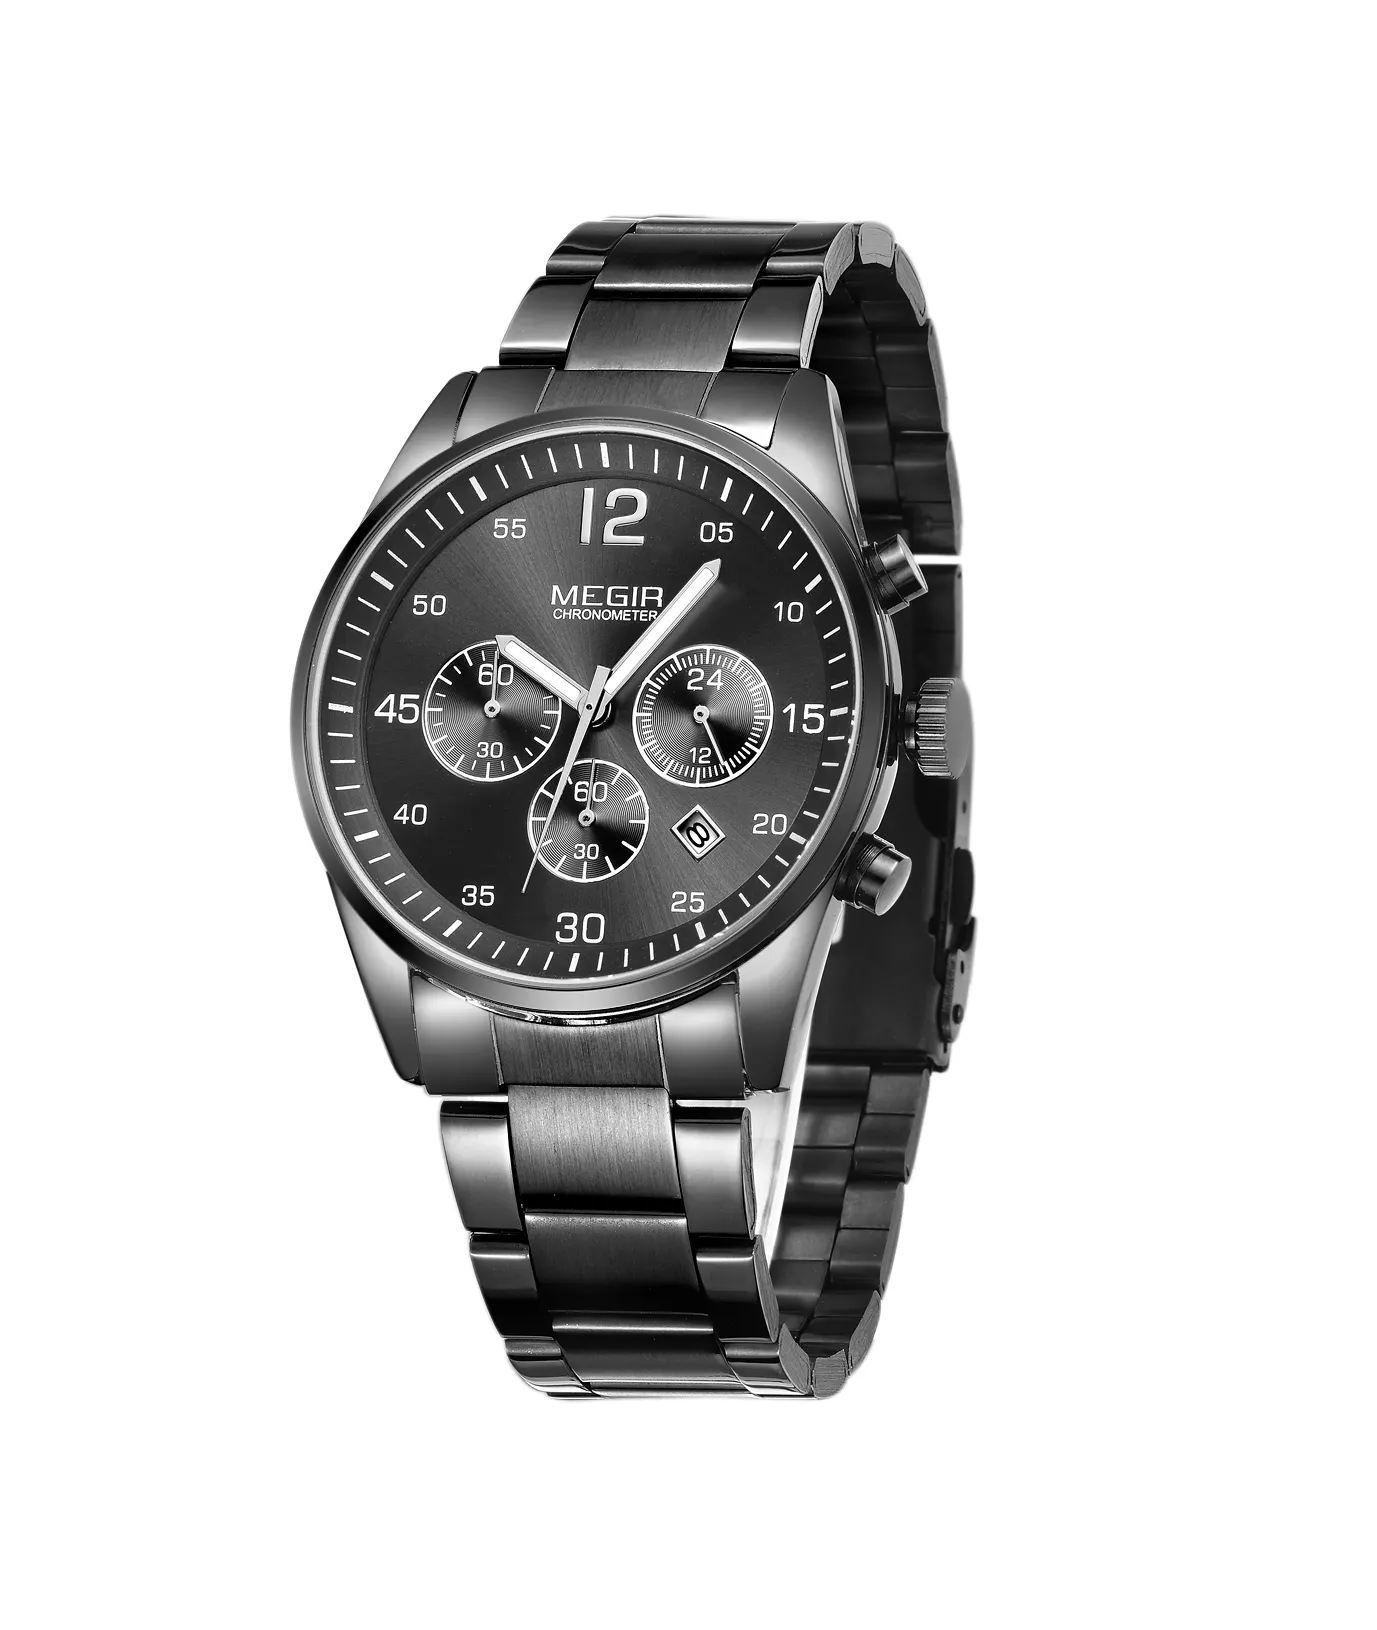 Commercio all'ingrosso nuovo MEGIR 2010 nero orologi da uomo di lusso orologi al quarzo in acciaio inox orologio da uomo LOGO personalizzato di fabbrica